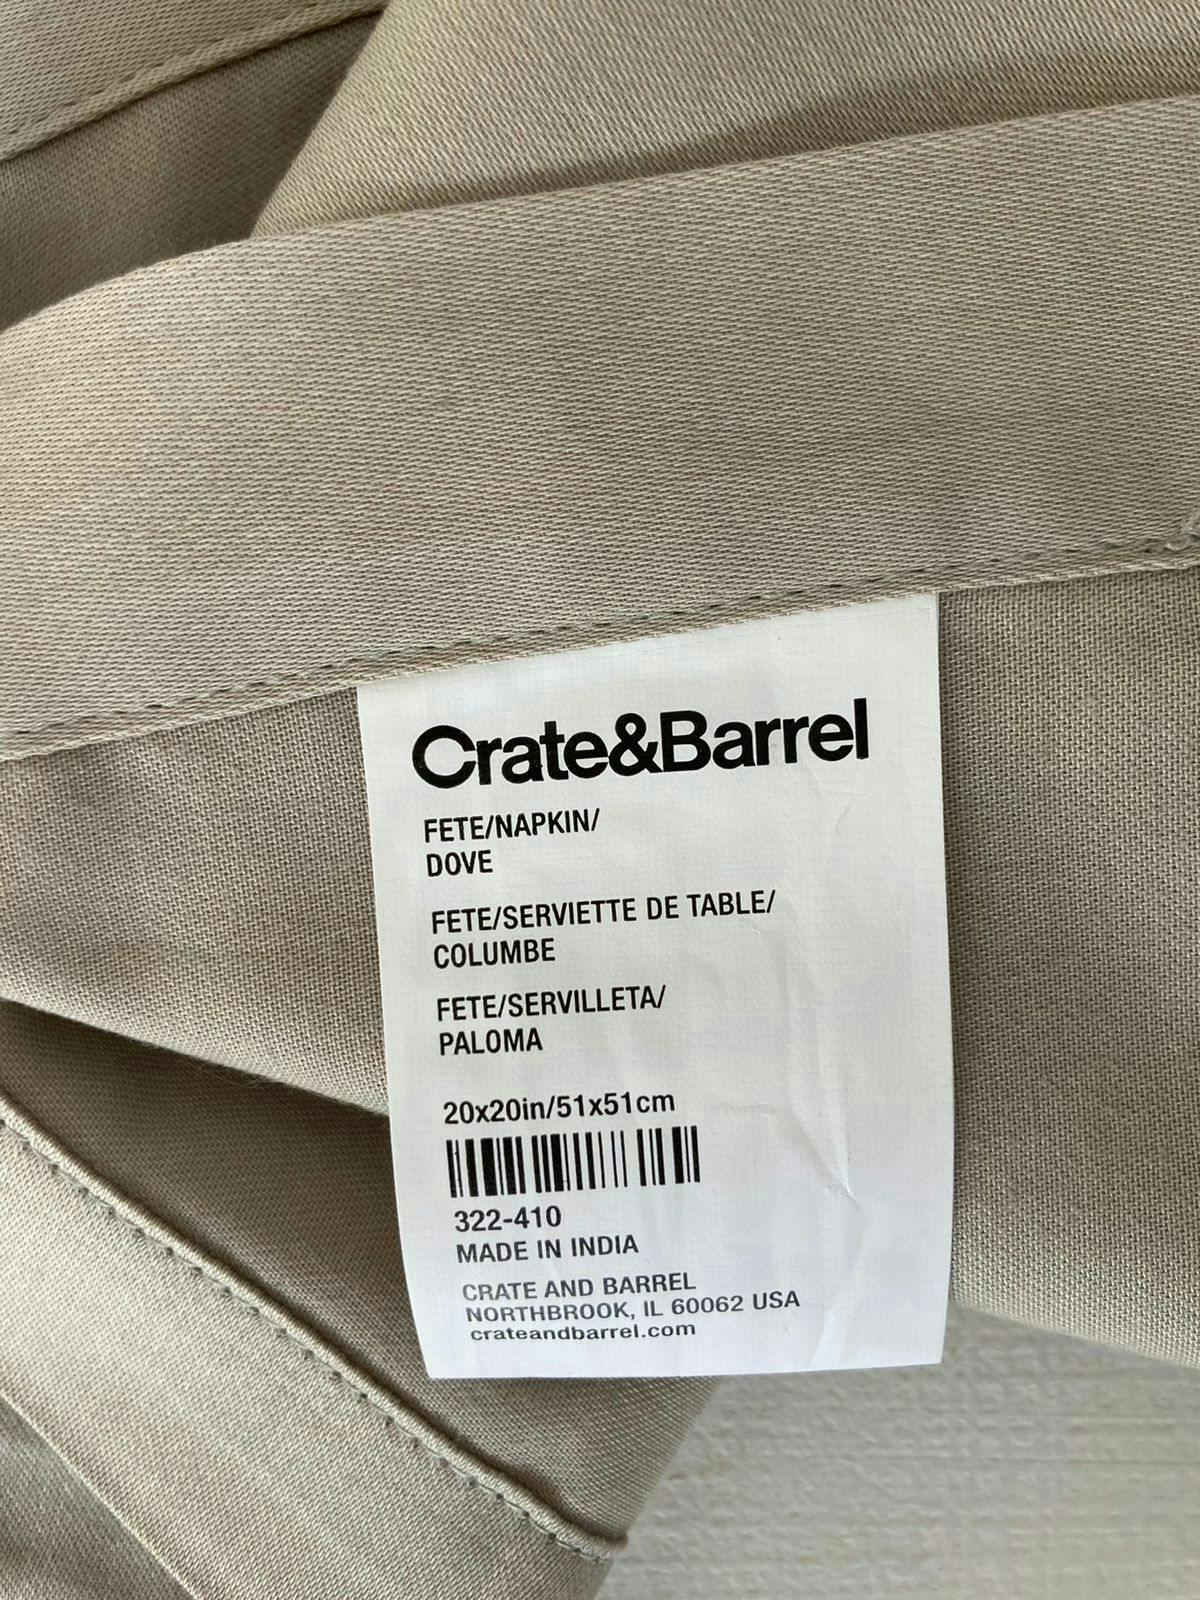 Servilletas Crate and Barrel beige ligeramente satinado 51x51, sin uso, 100% algodón. Set x4 (hay otro set listado)